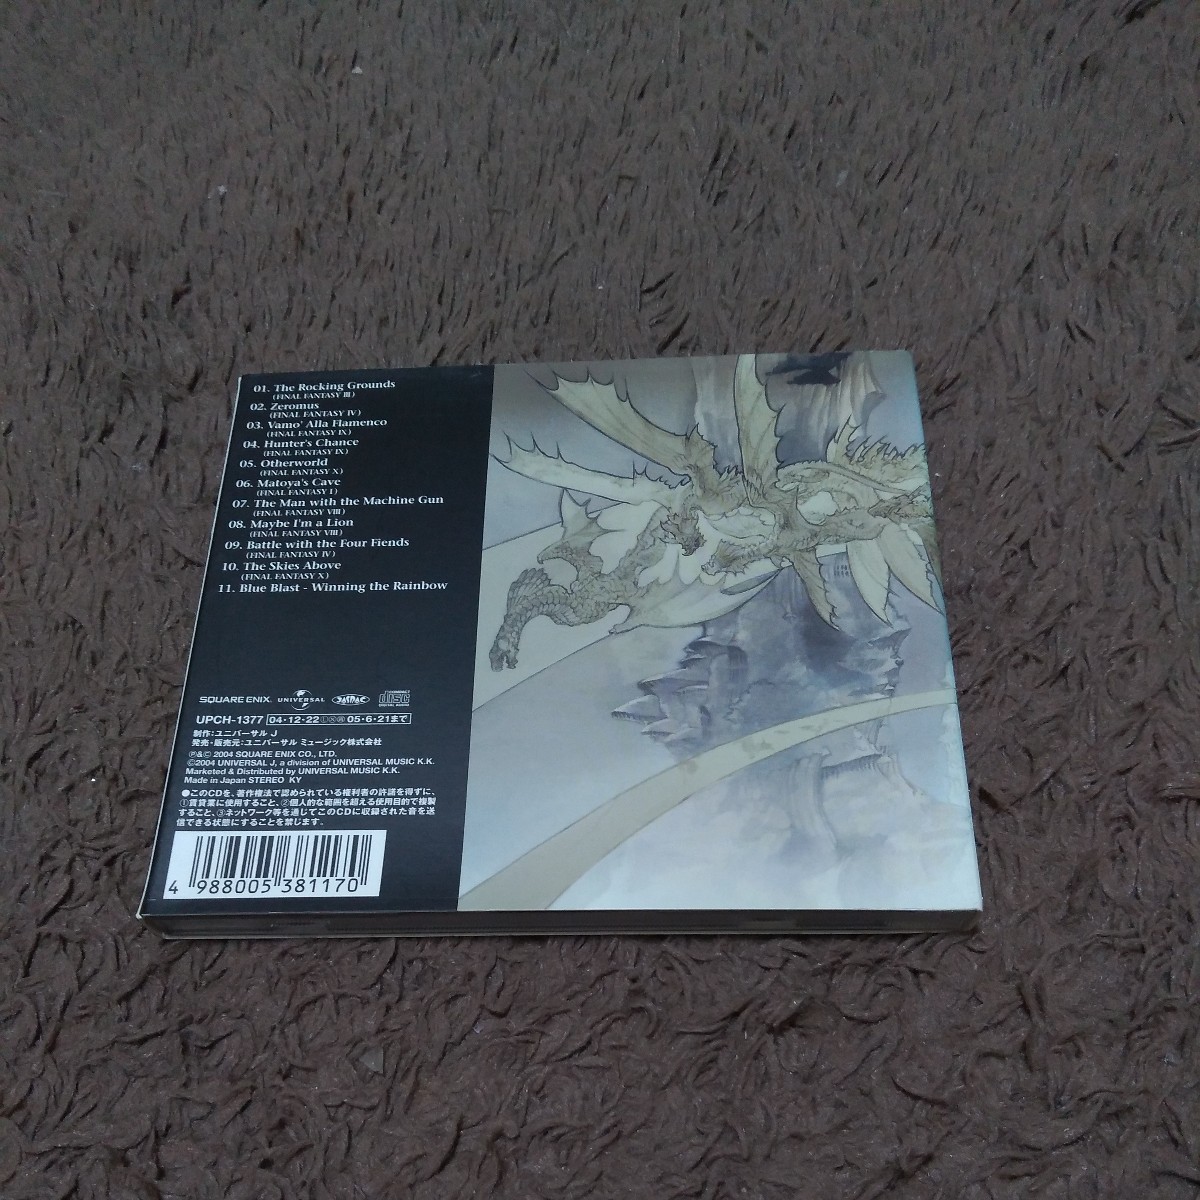 ファイナルファンタジーバトルアレンジ・コンピレーション第２弾 THE BLACK MAGES Ⅱ The Skies Above FINAL FANTASY CD の画像2